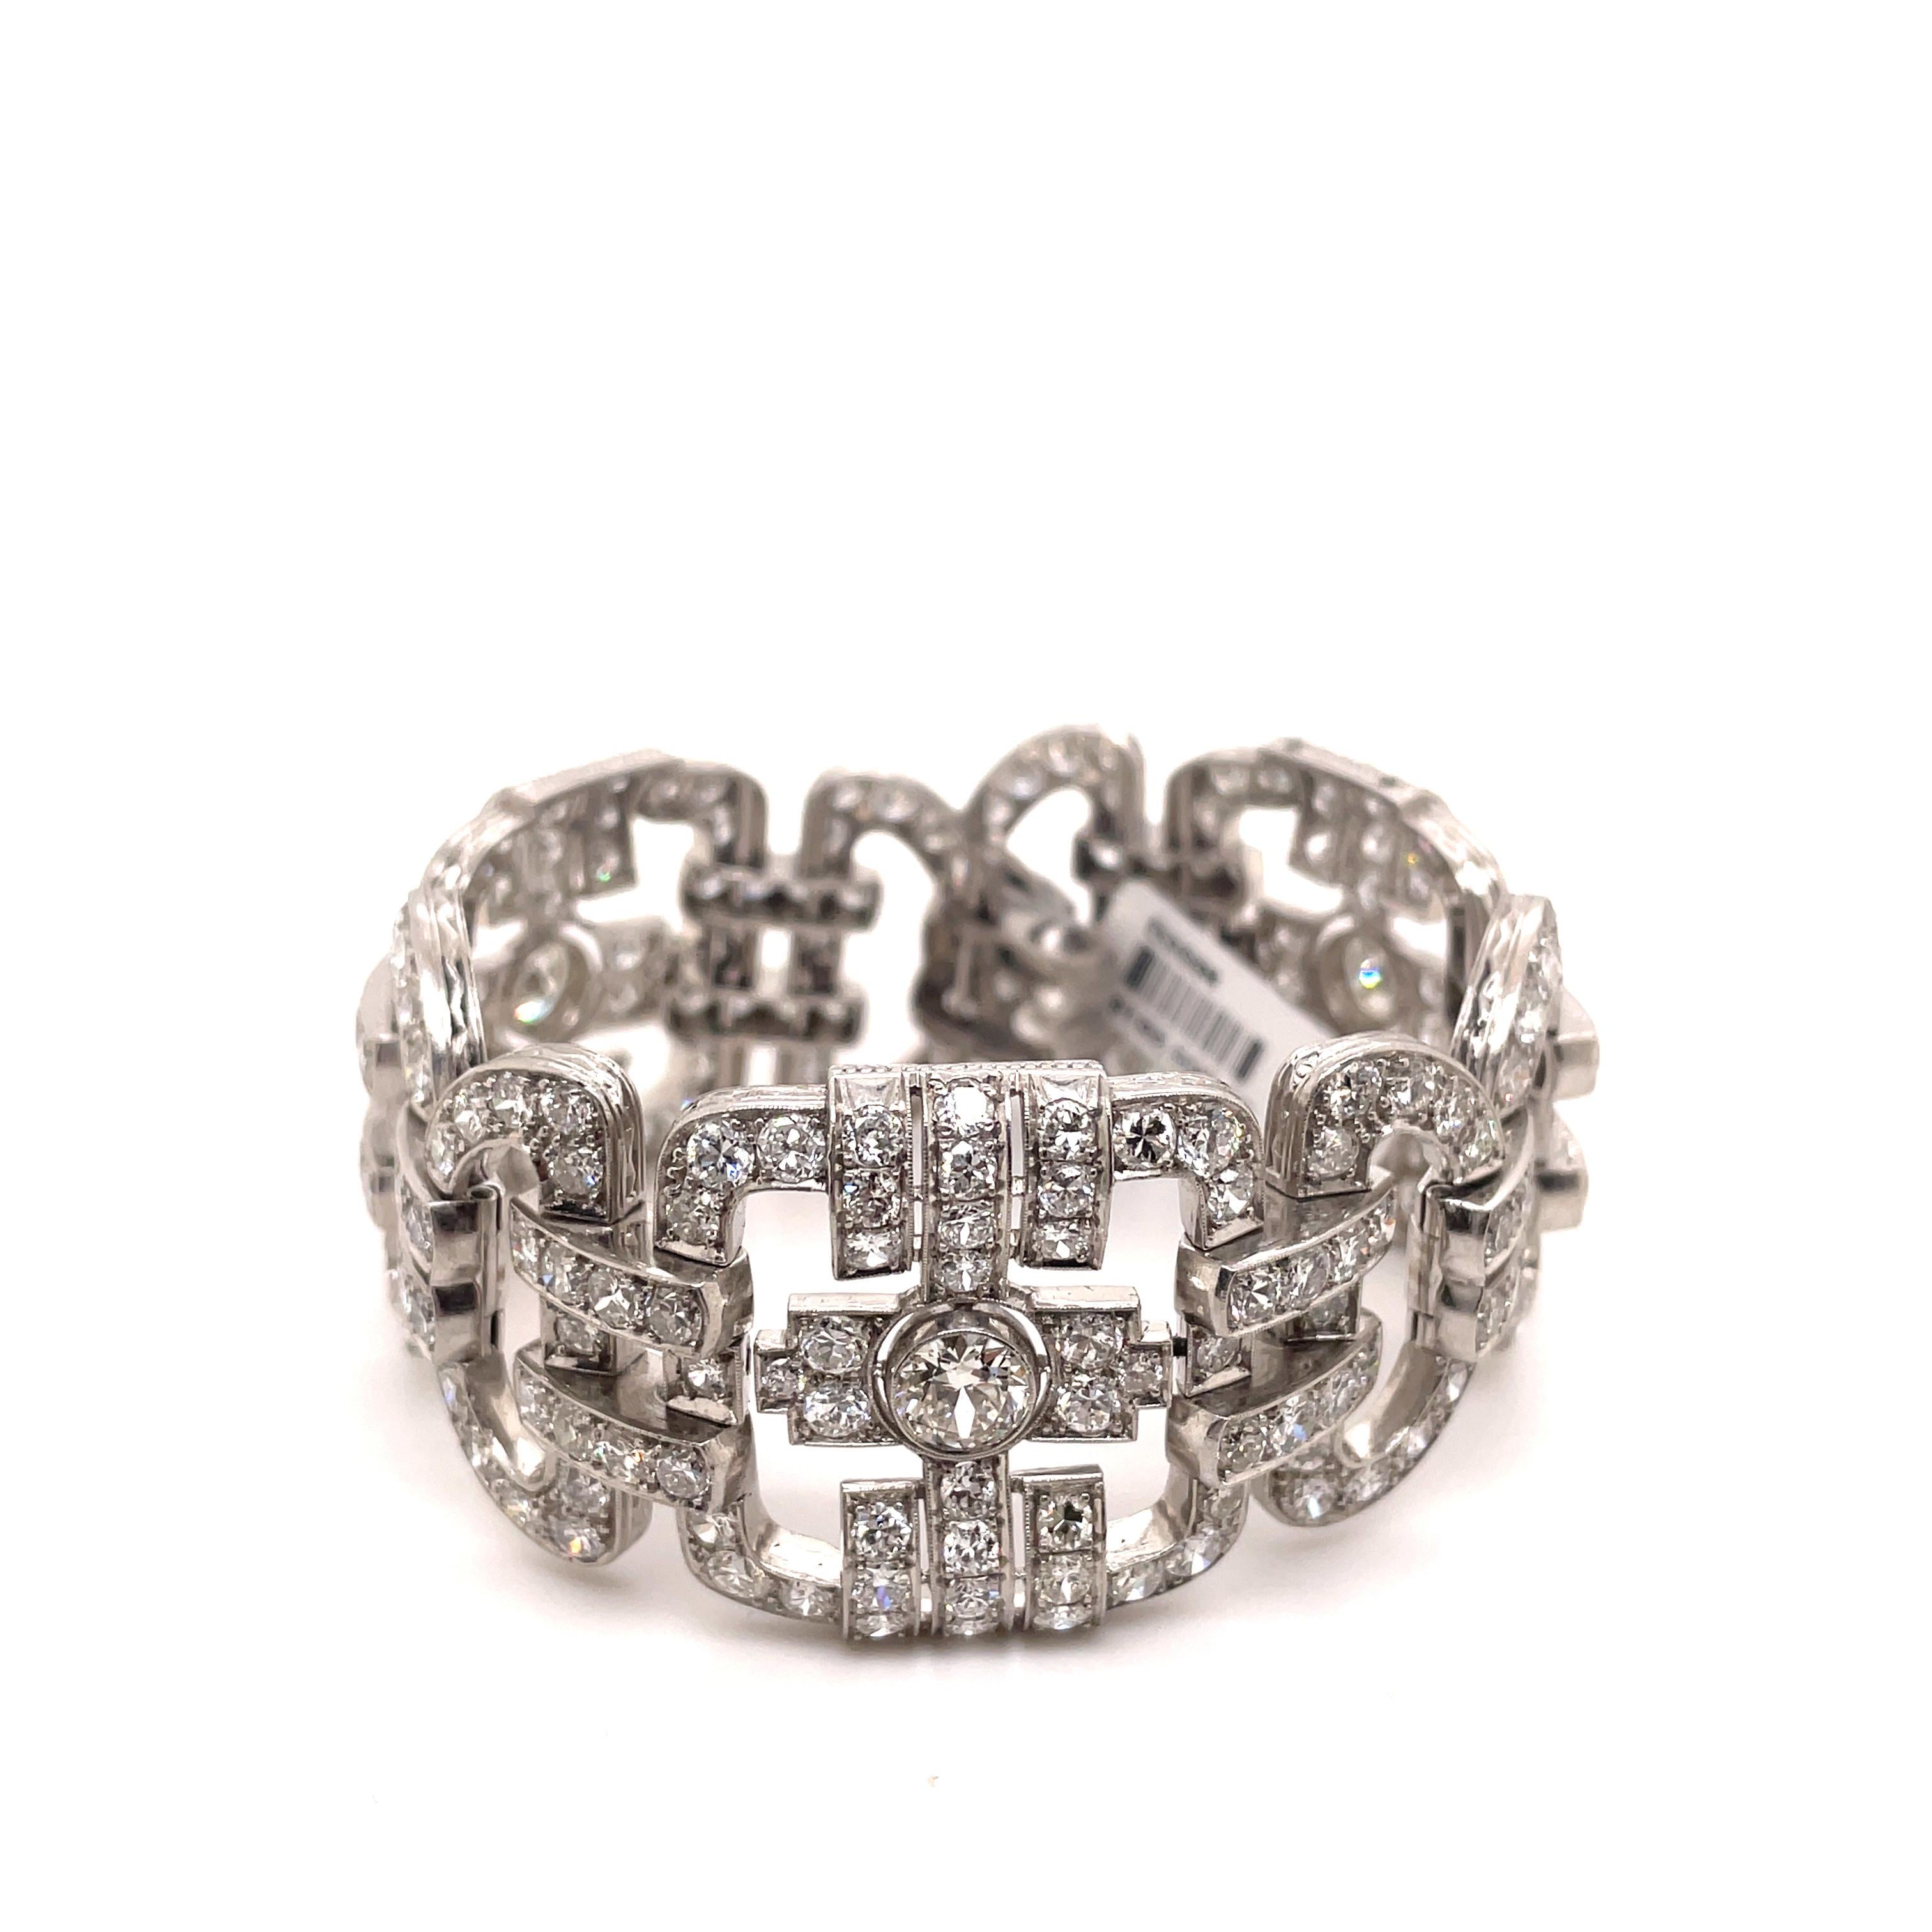 Old Mine Cut Art Deco Style Apx 35ct Diamond Bracelet Platinum For Sale